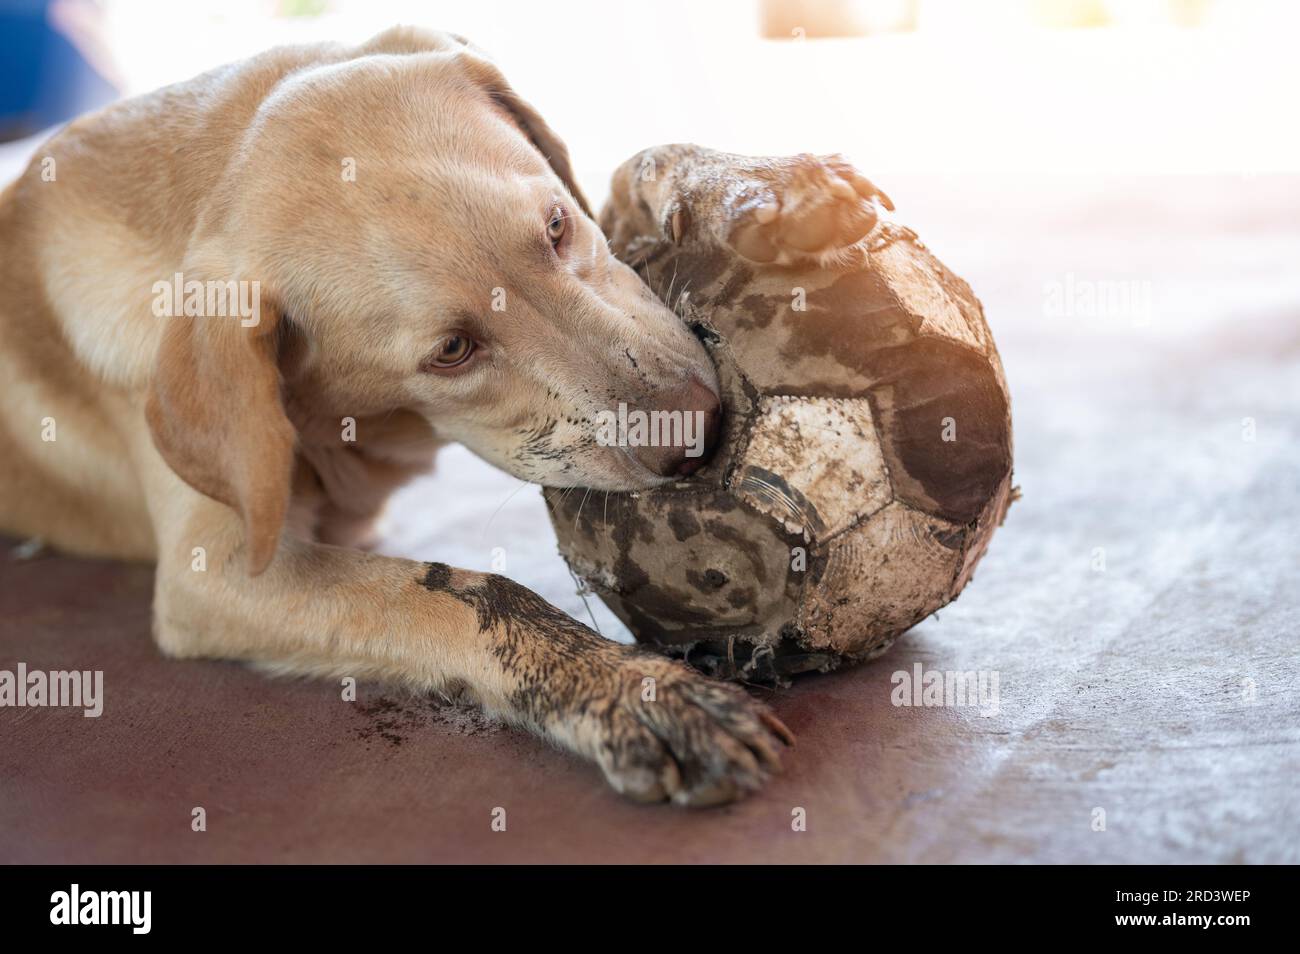 Addestrare labrador Dog a prendere la palla in primo piano sullo sfondo della luce solare Foto Stock